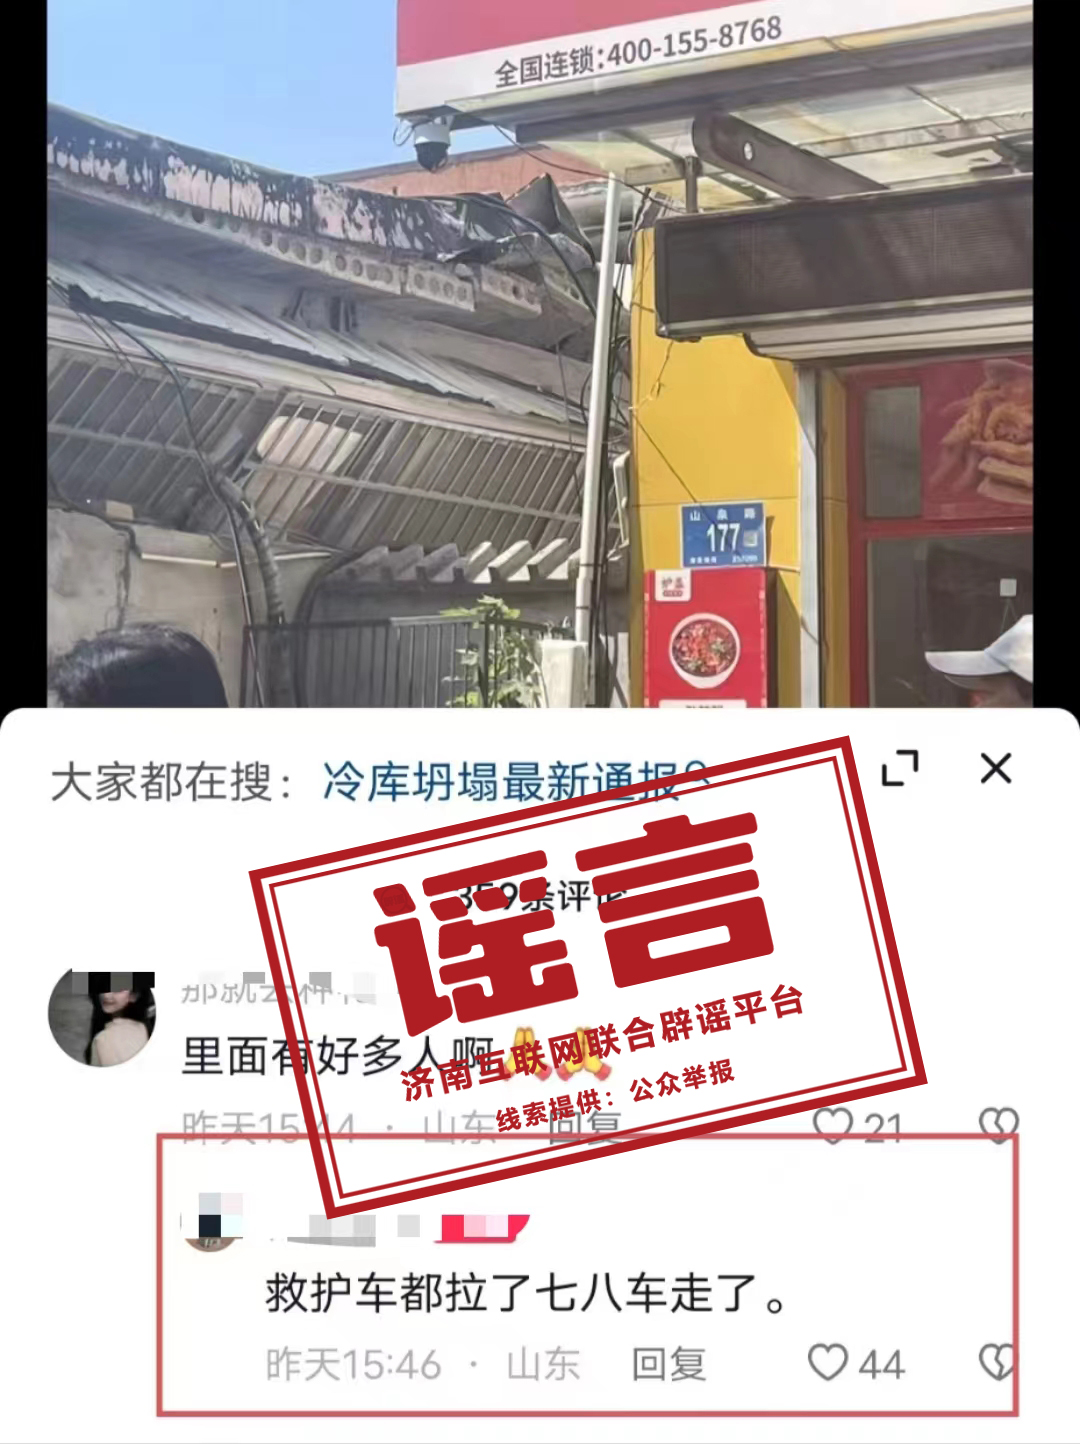 “济南章丘一门店坍塌救护车拉了七八车”系不实信息！